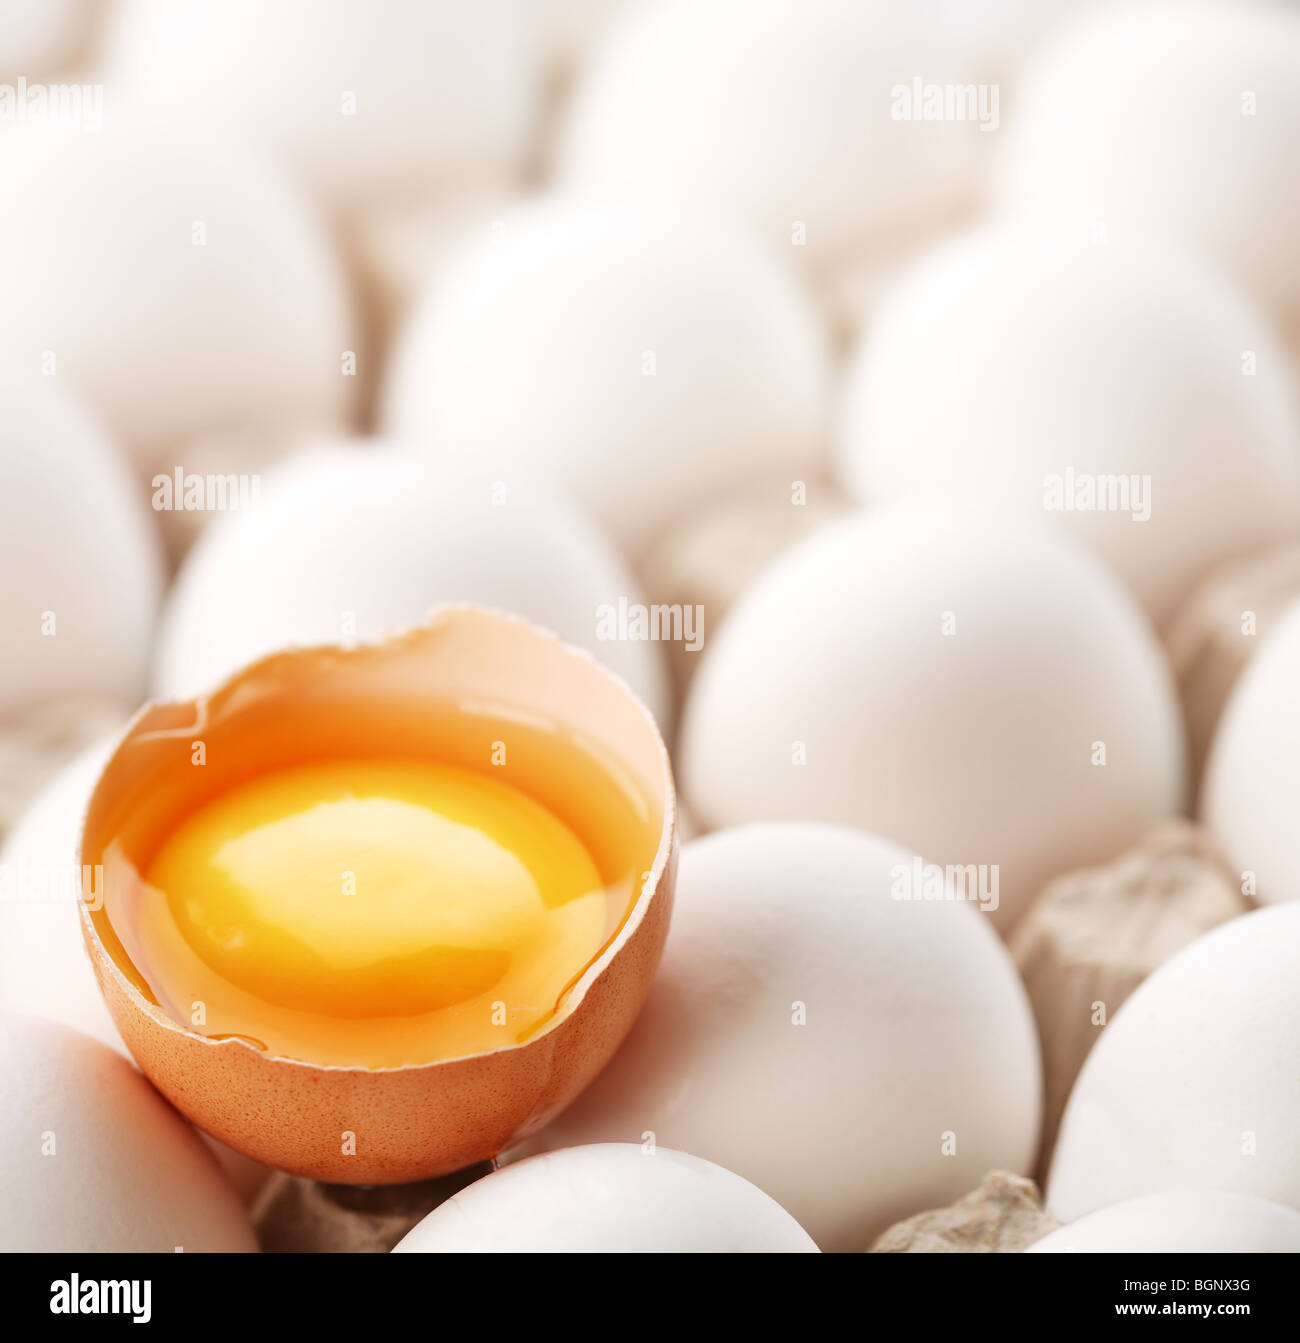 El huevo es marrón roto entre los blancos de los huevos. Foto de stock